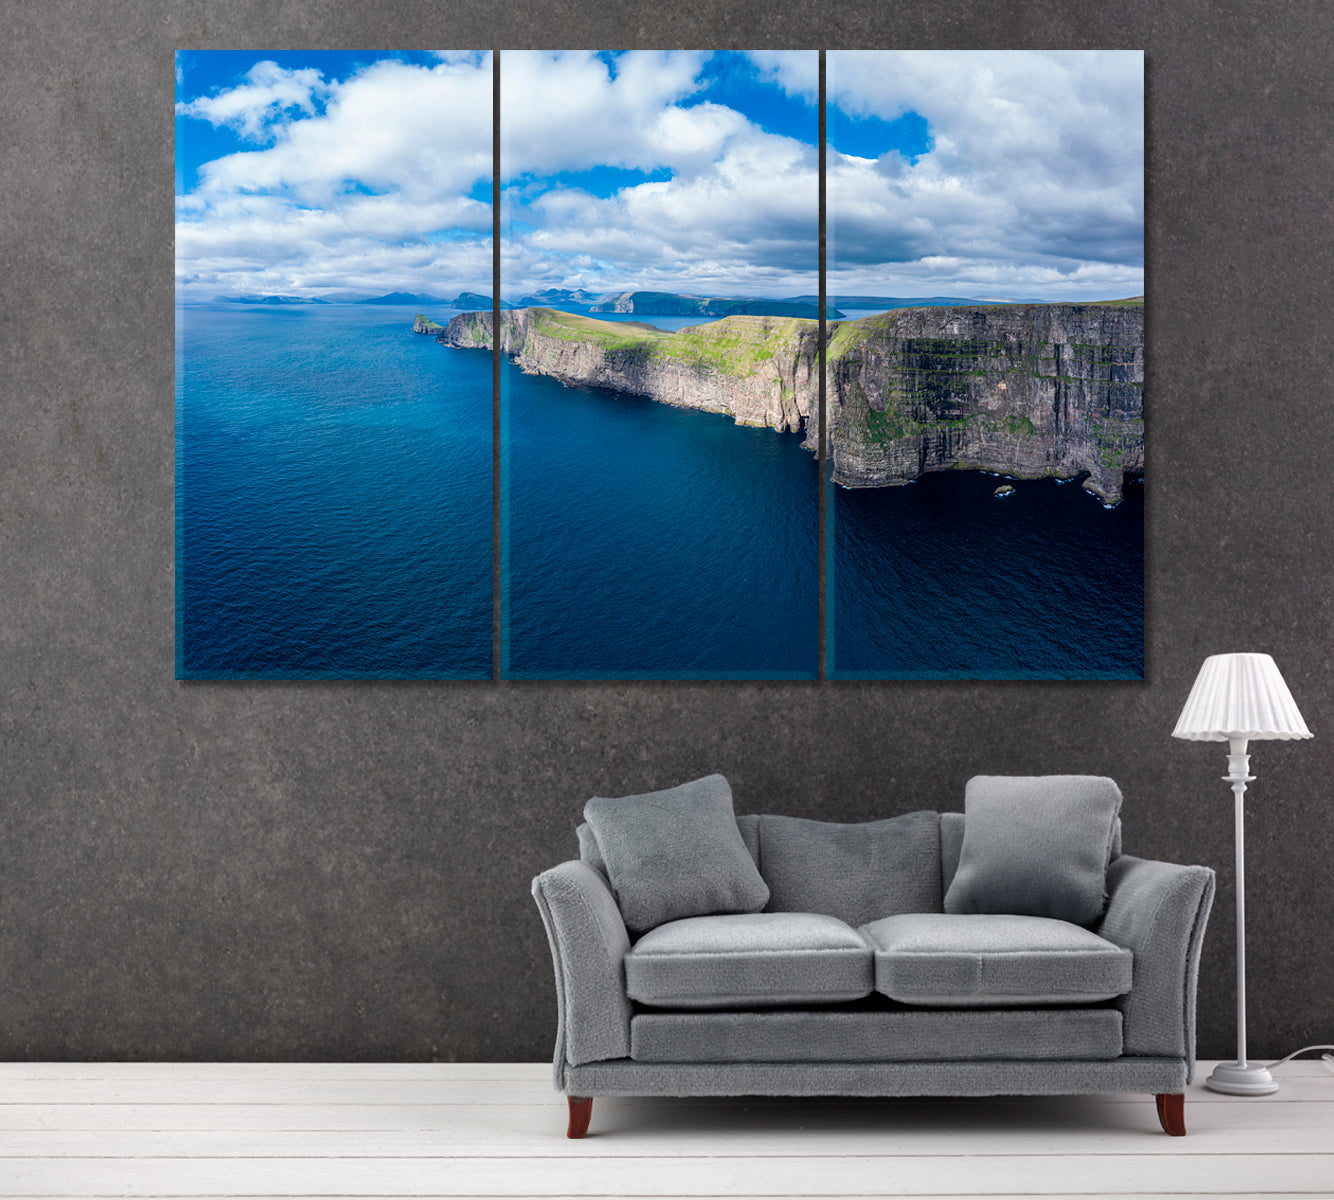 Sandoy Island Cliffs Faroe Islands Canvas Print ArtLexy 3 Panels 36"x24" inches 